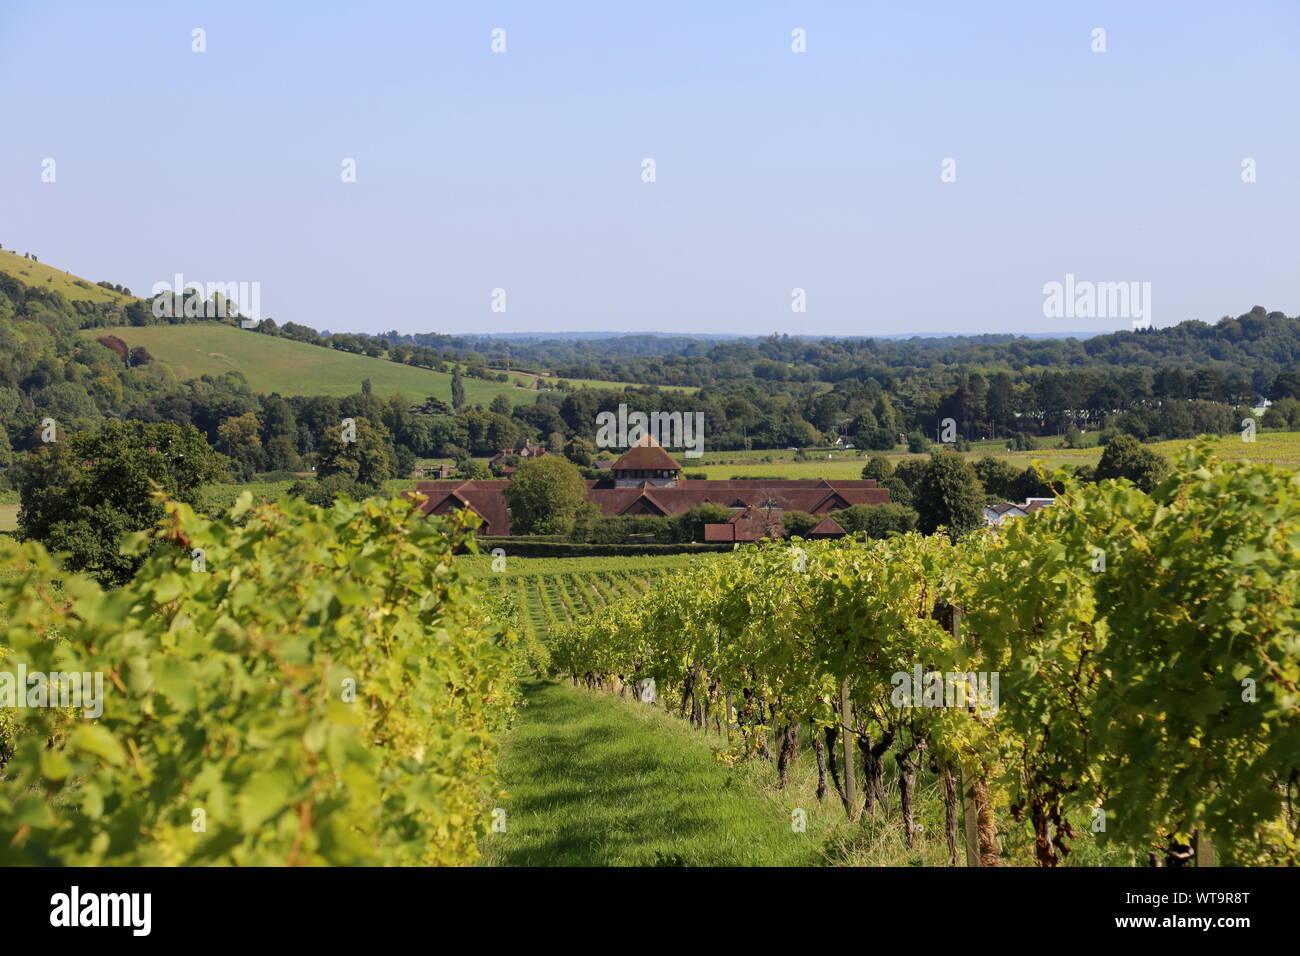 Reichensteiner (Vitis vinifera 'Reichensteiner') vines, Denbies Wine Estate, Dorking, Surrey Hills, North Downs, England, Great Britain, UK, Europe Stock Photo